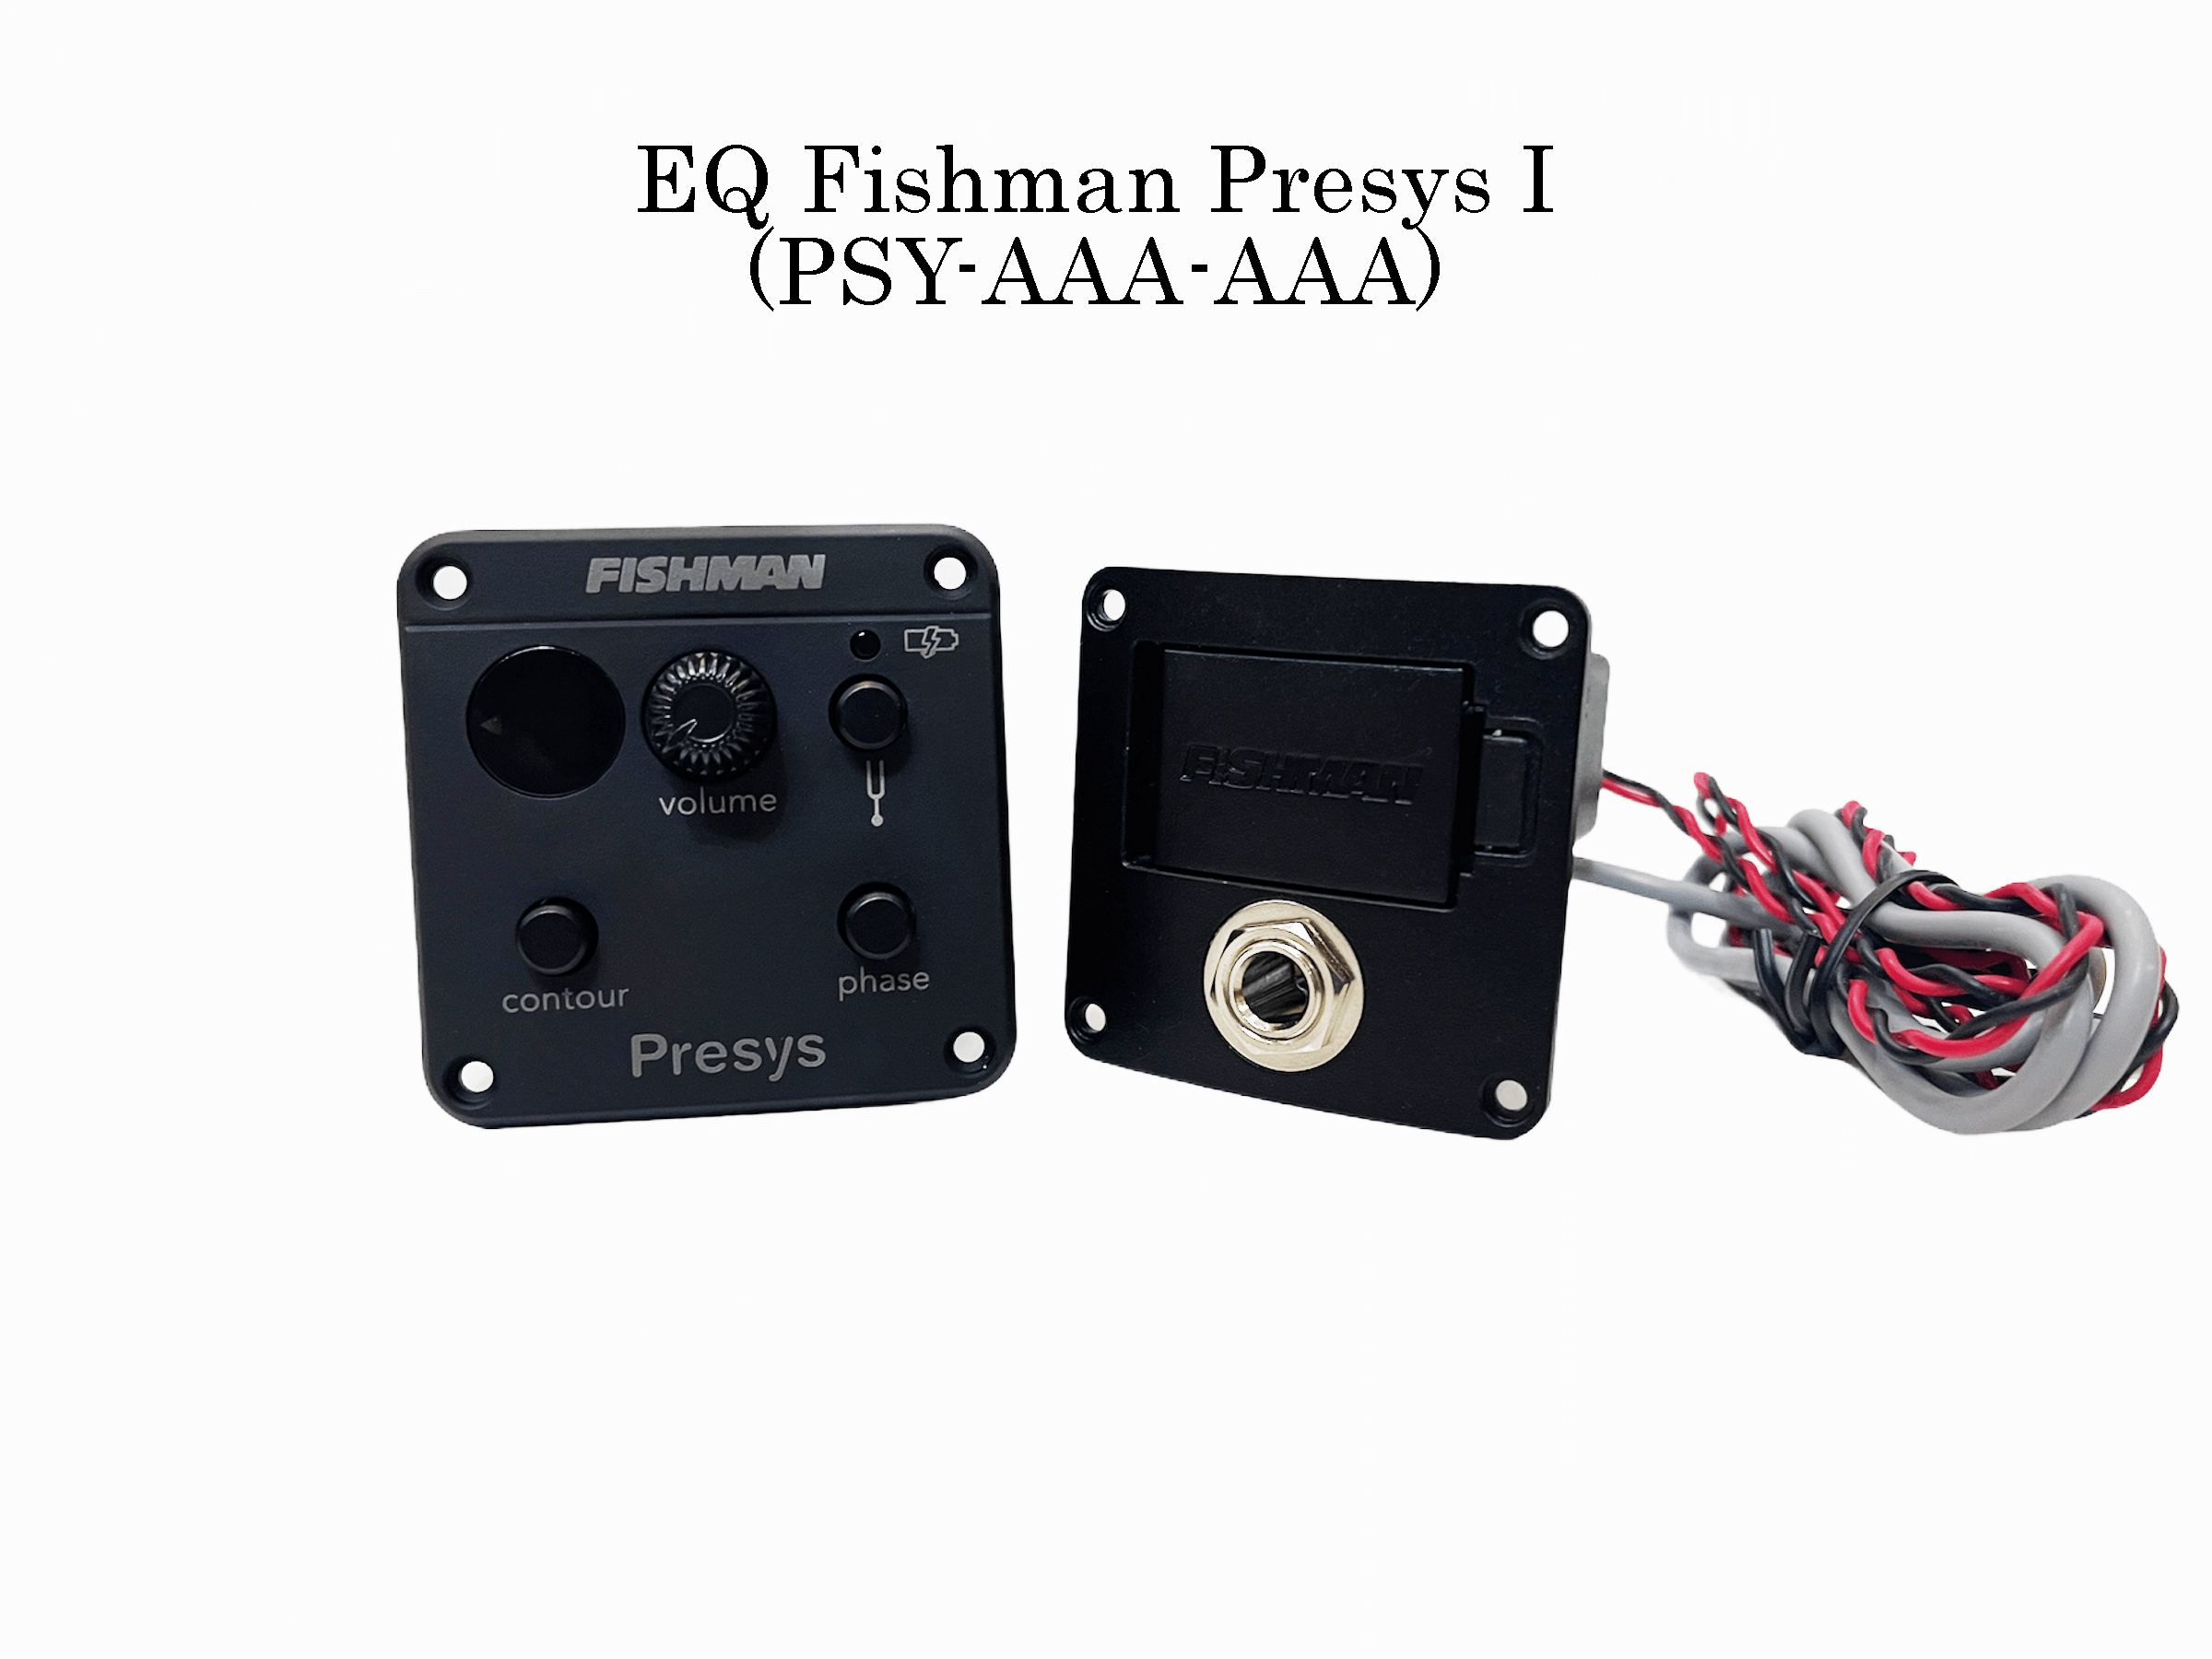 EQ Fishman Presys I (PSY-AAA-AAA)